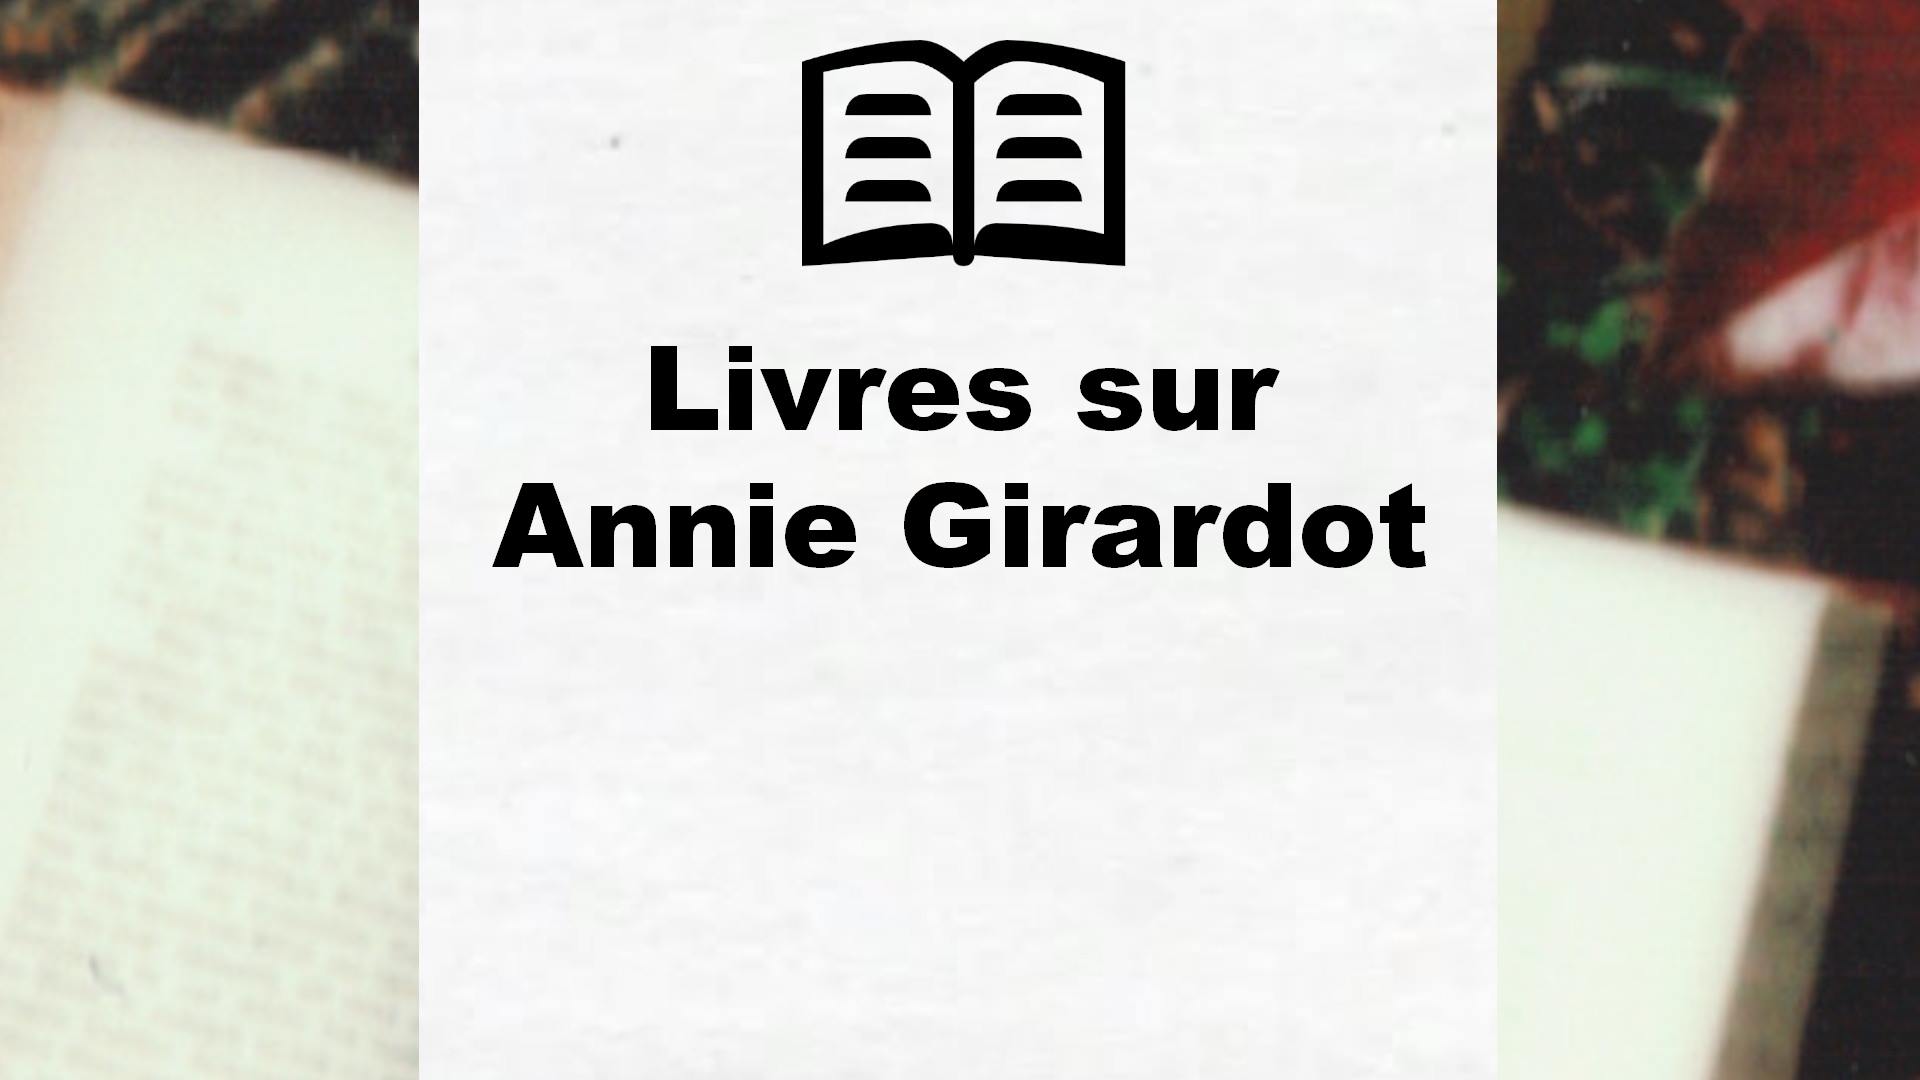 Livres sur Annie Girardot